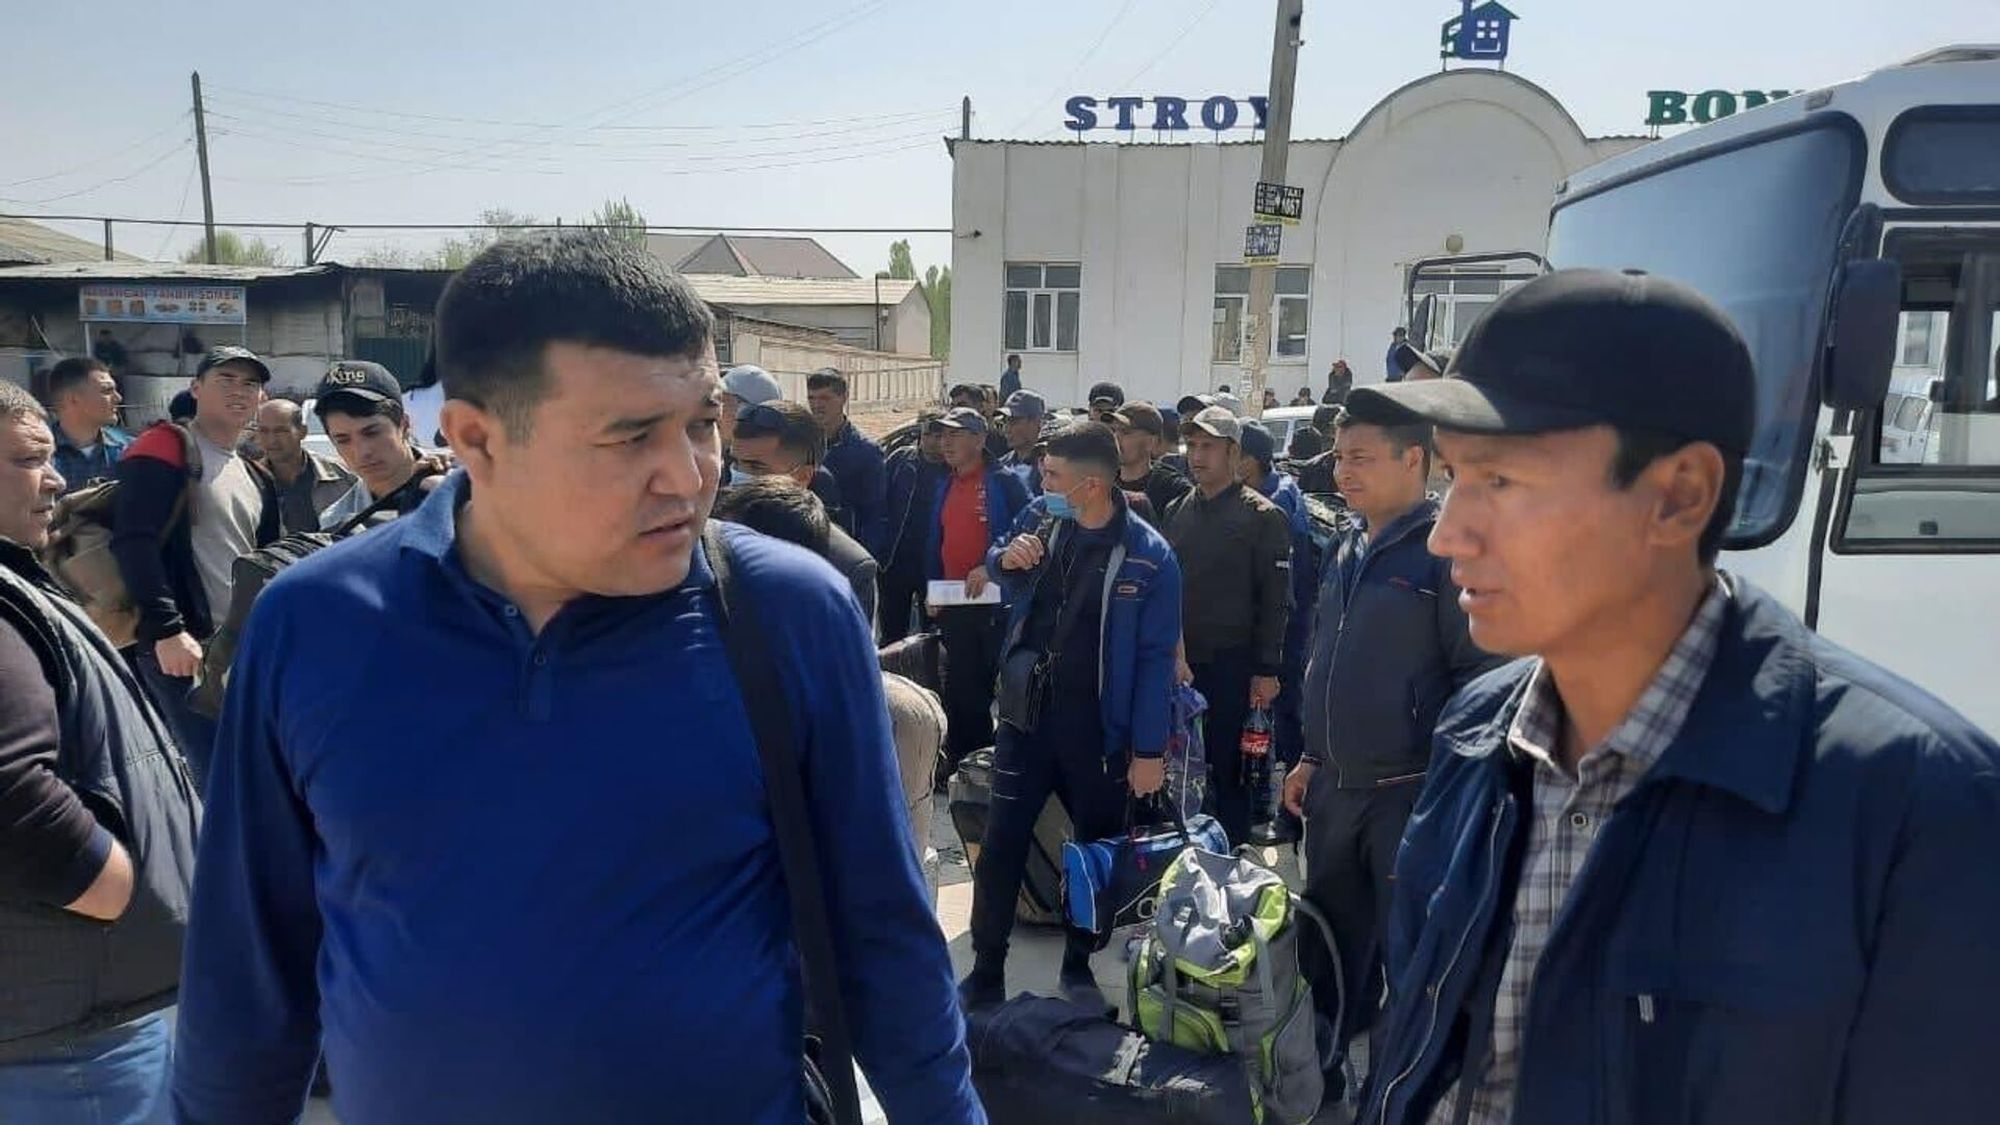 Прием на работу граждан Киргизии, пошаговая инструкция, образец трудового договора